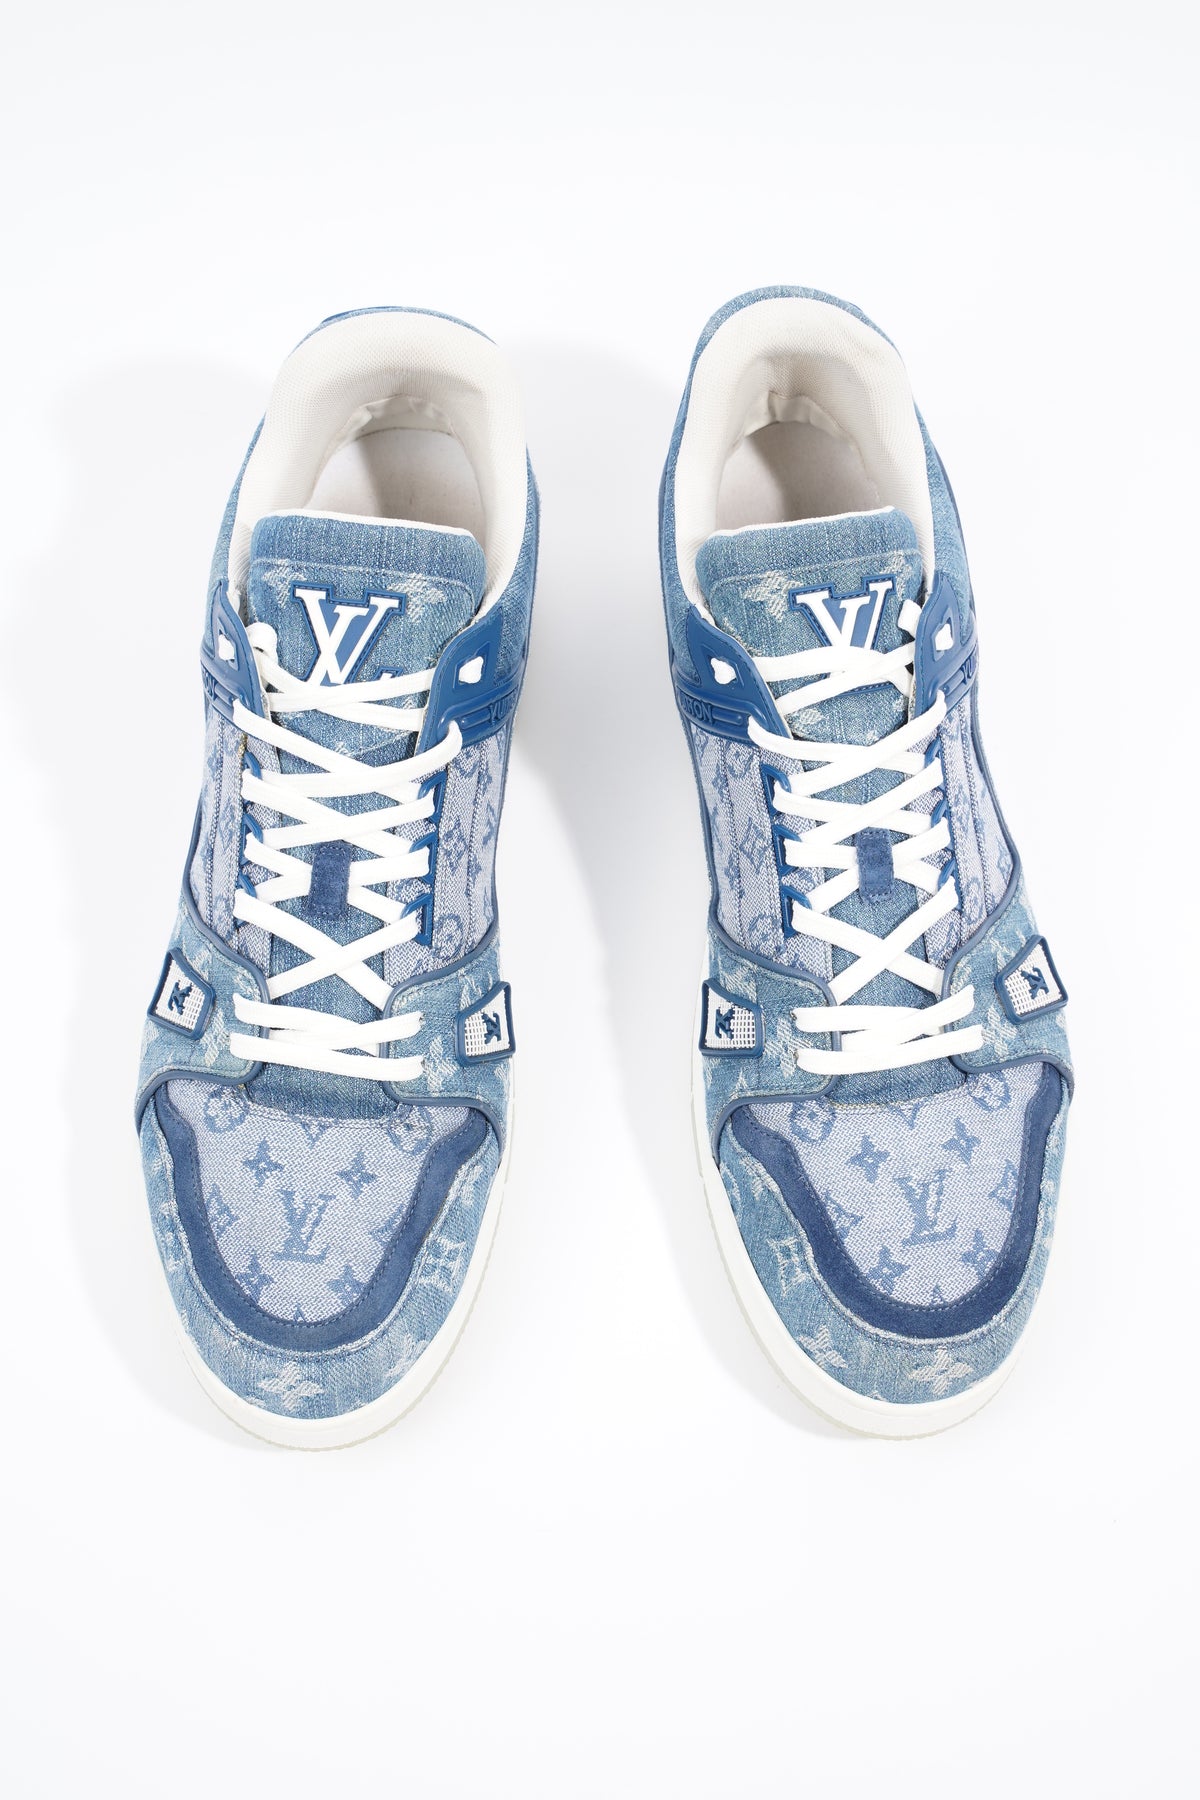 Louis Vuitton, Shoes, Louis Vuitton Denim Sneakers